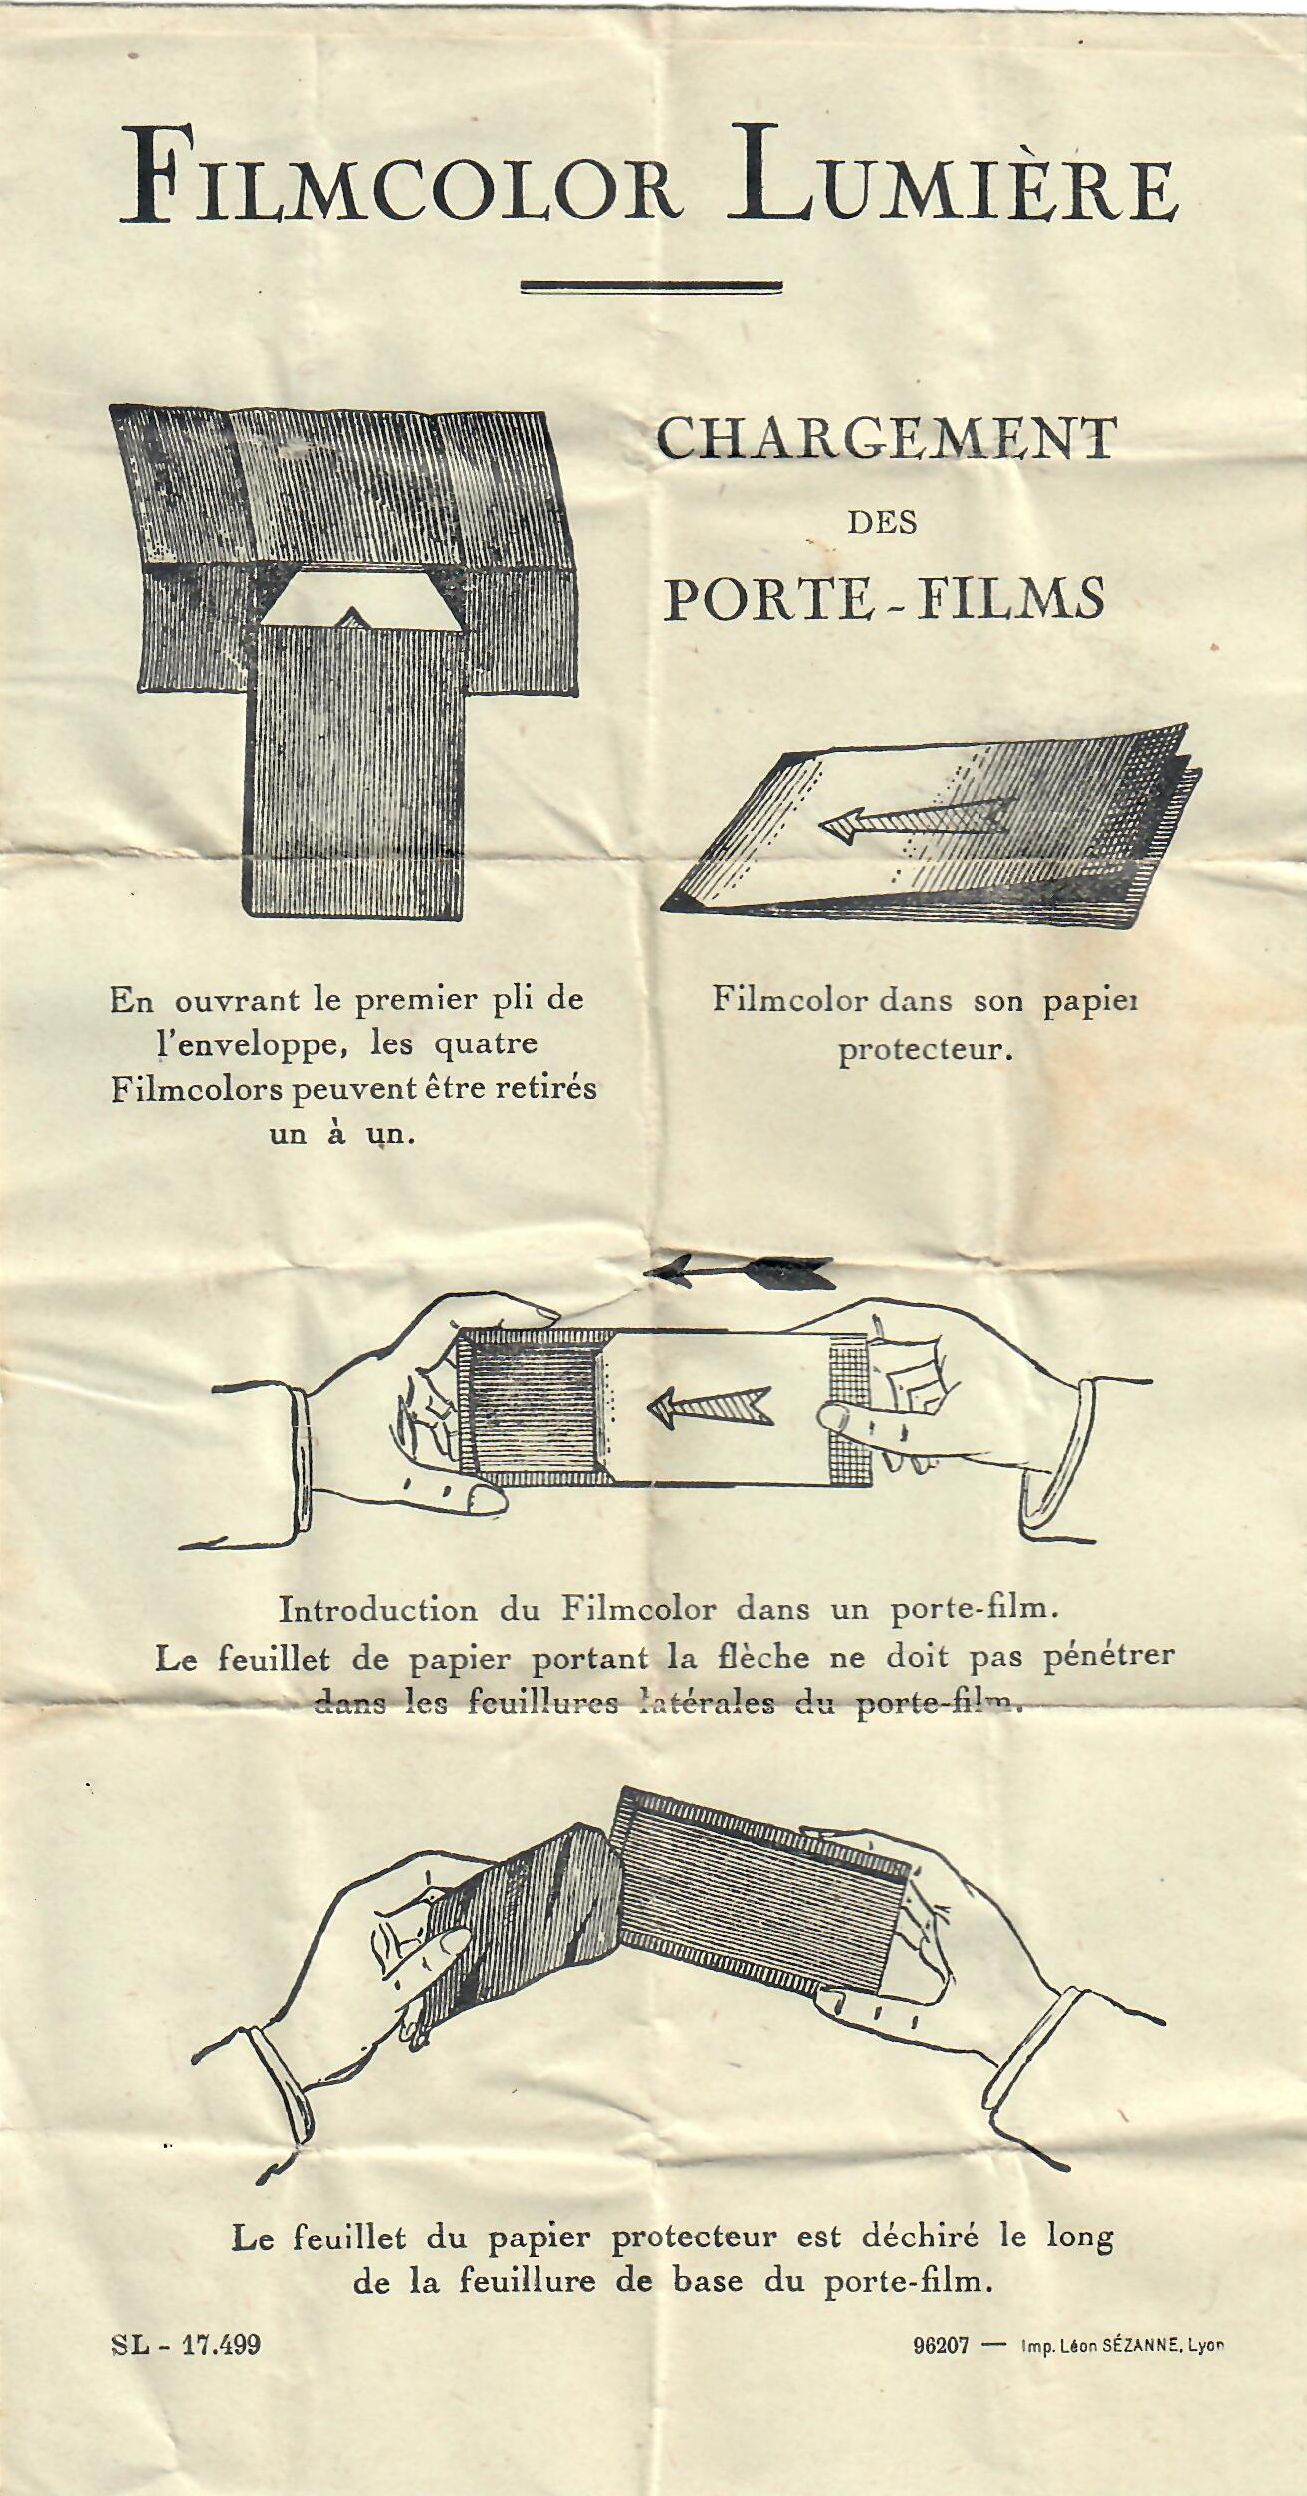 1931 - Sté Lumière - Notice Filmcolor chargement des porte-films